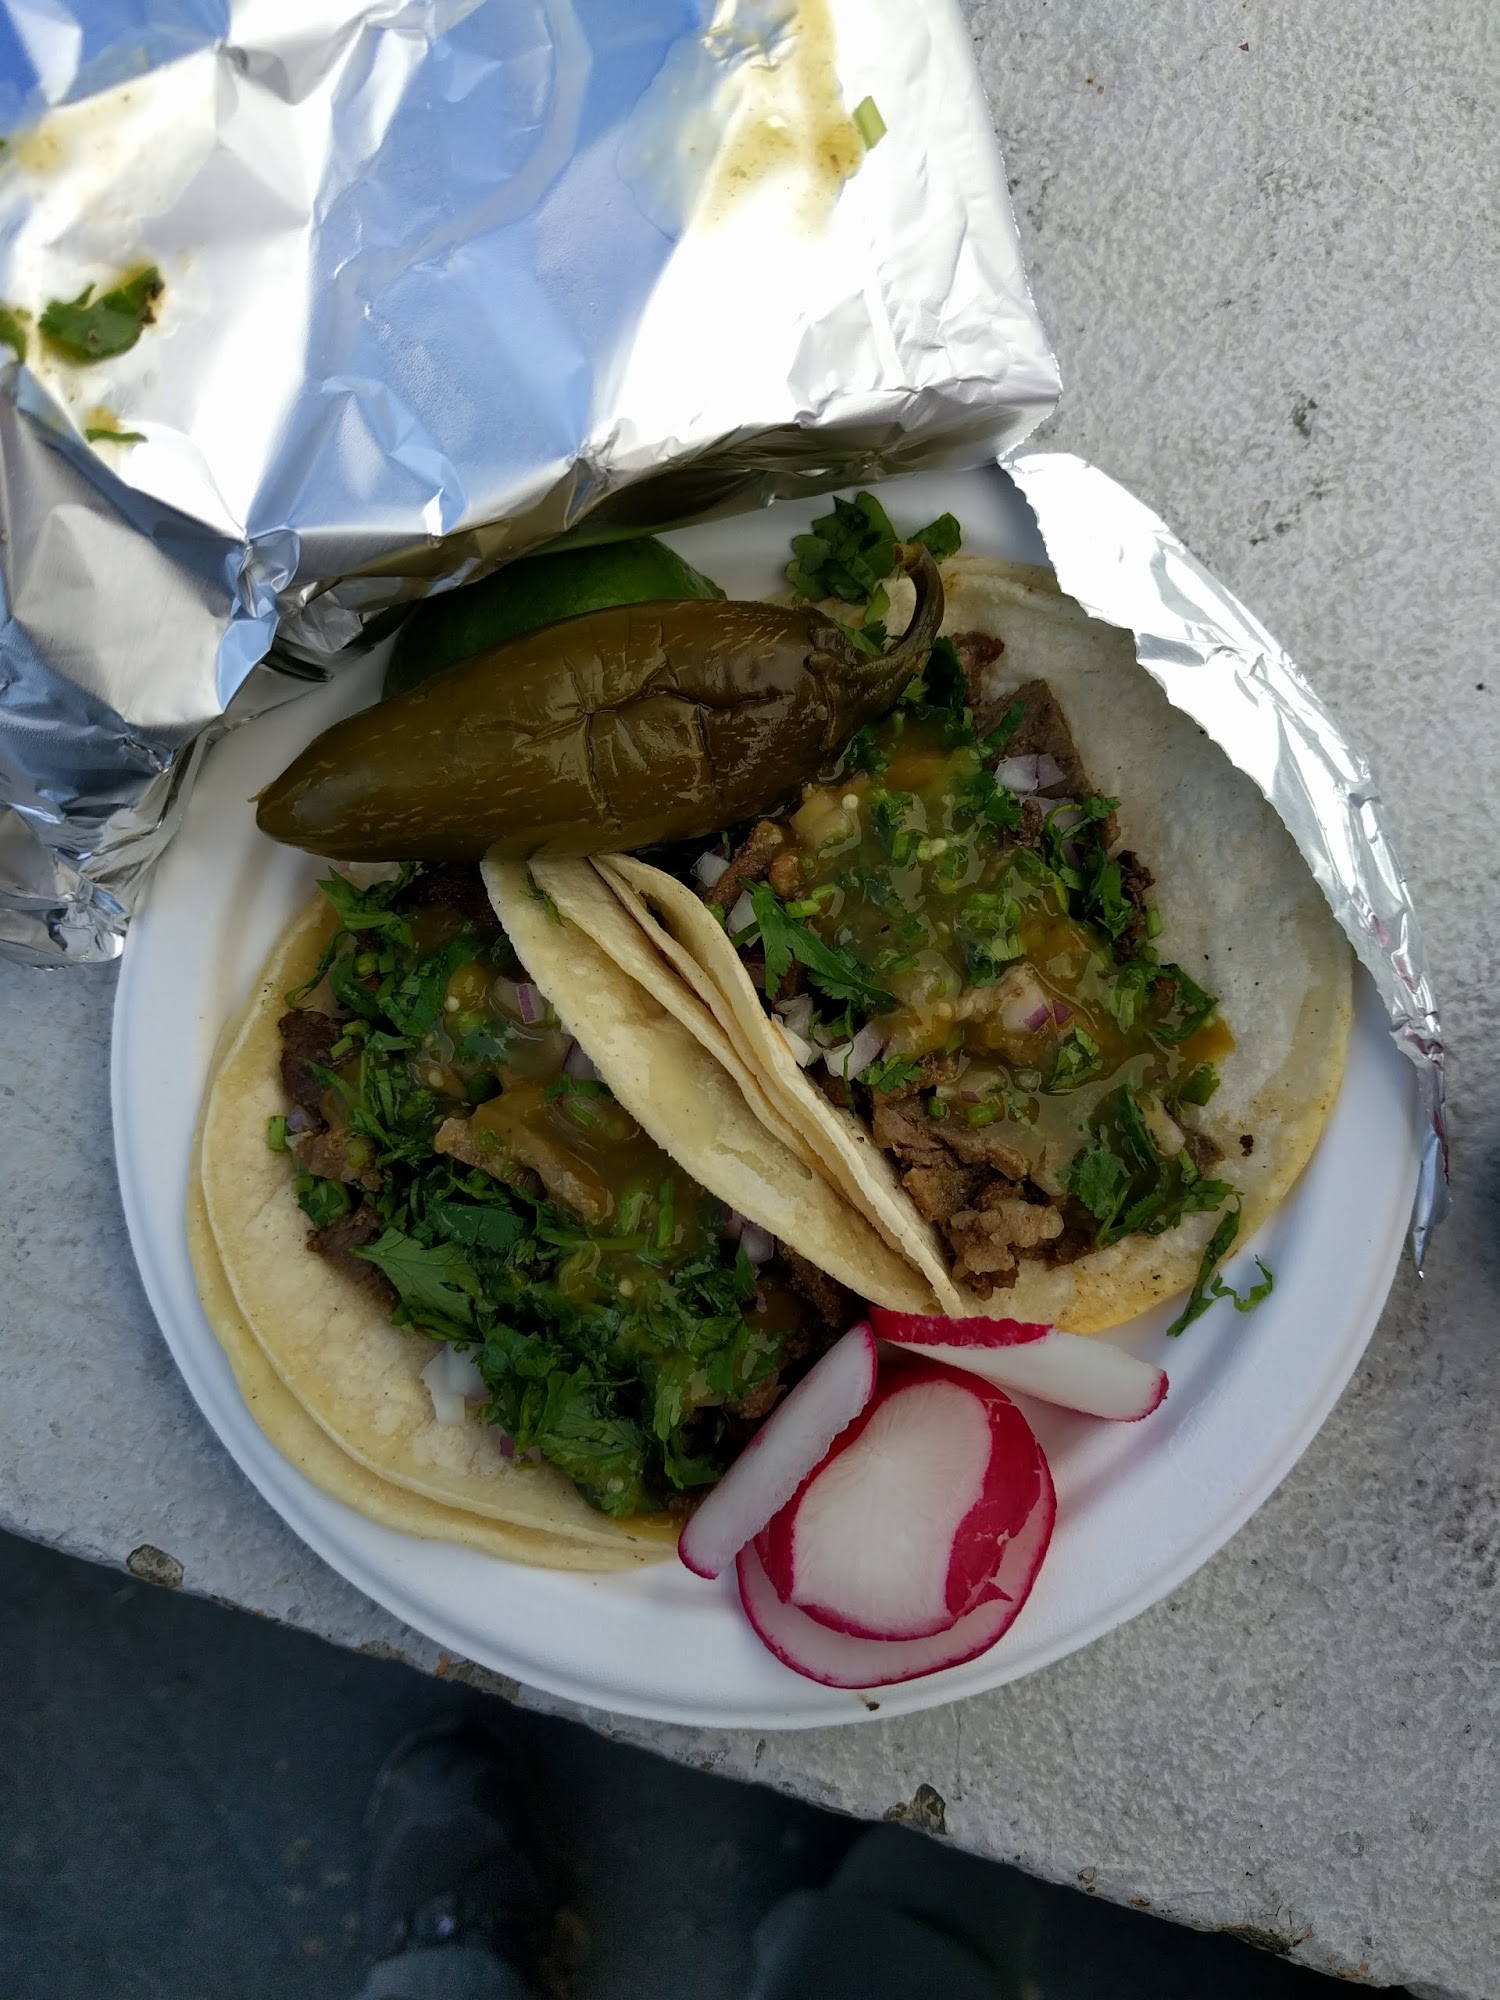 Tacos El Rey Food Truck